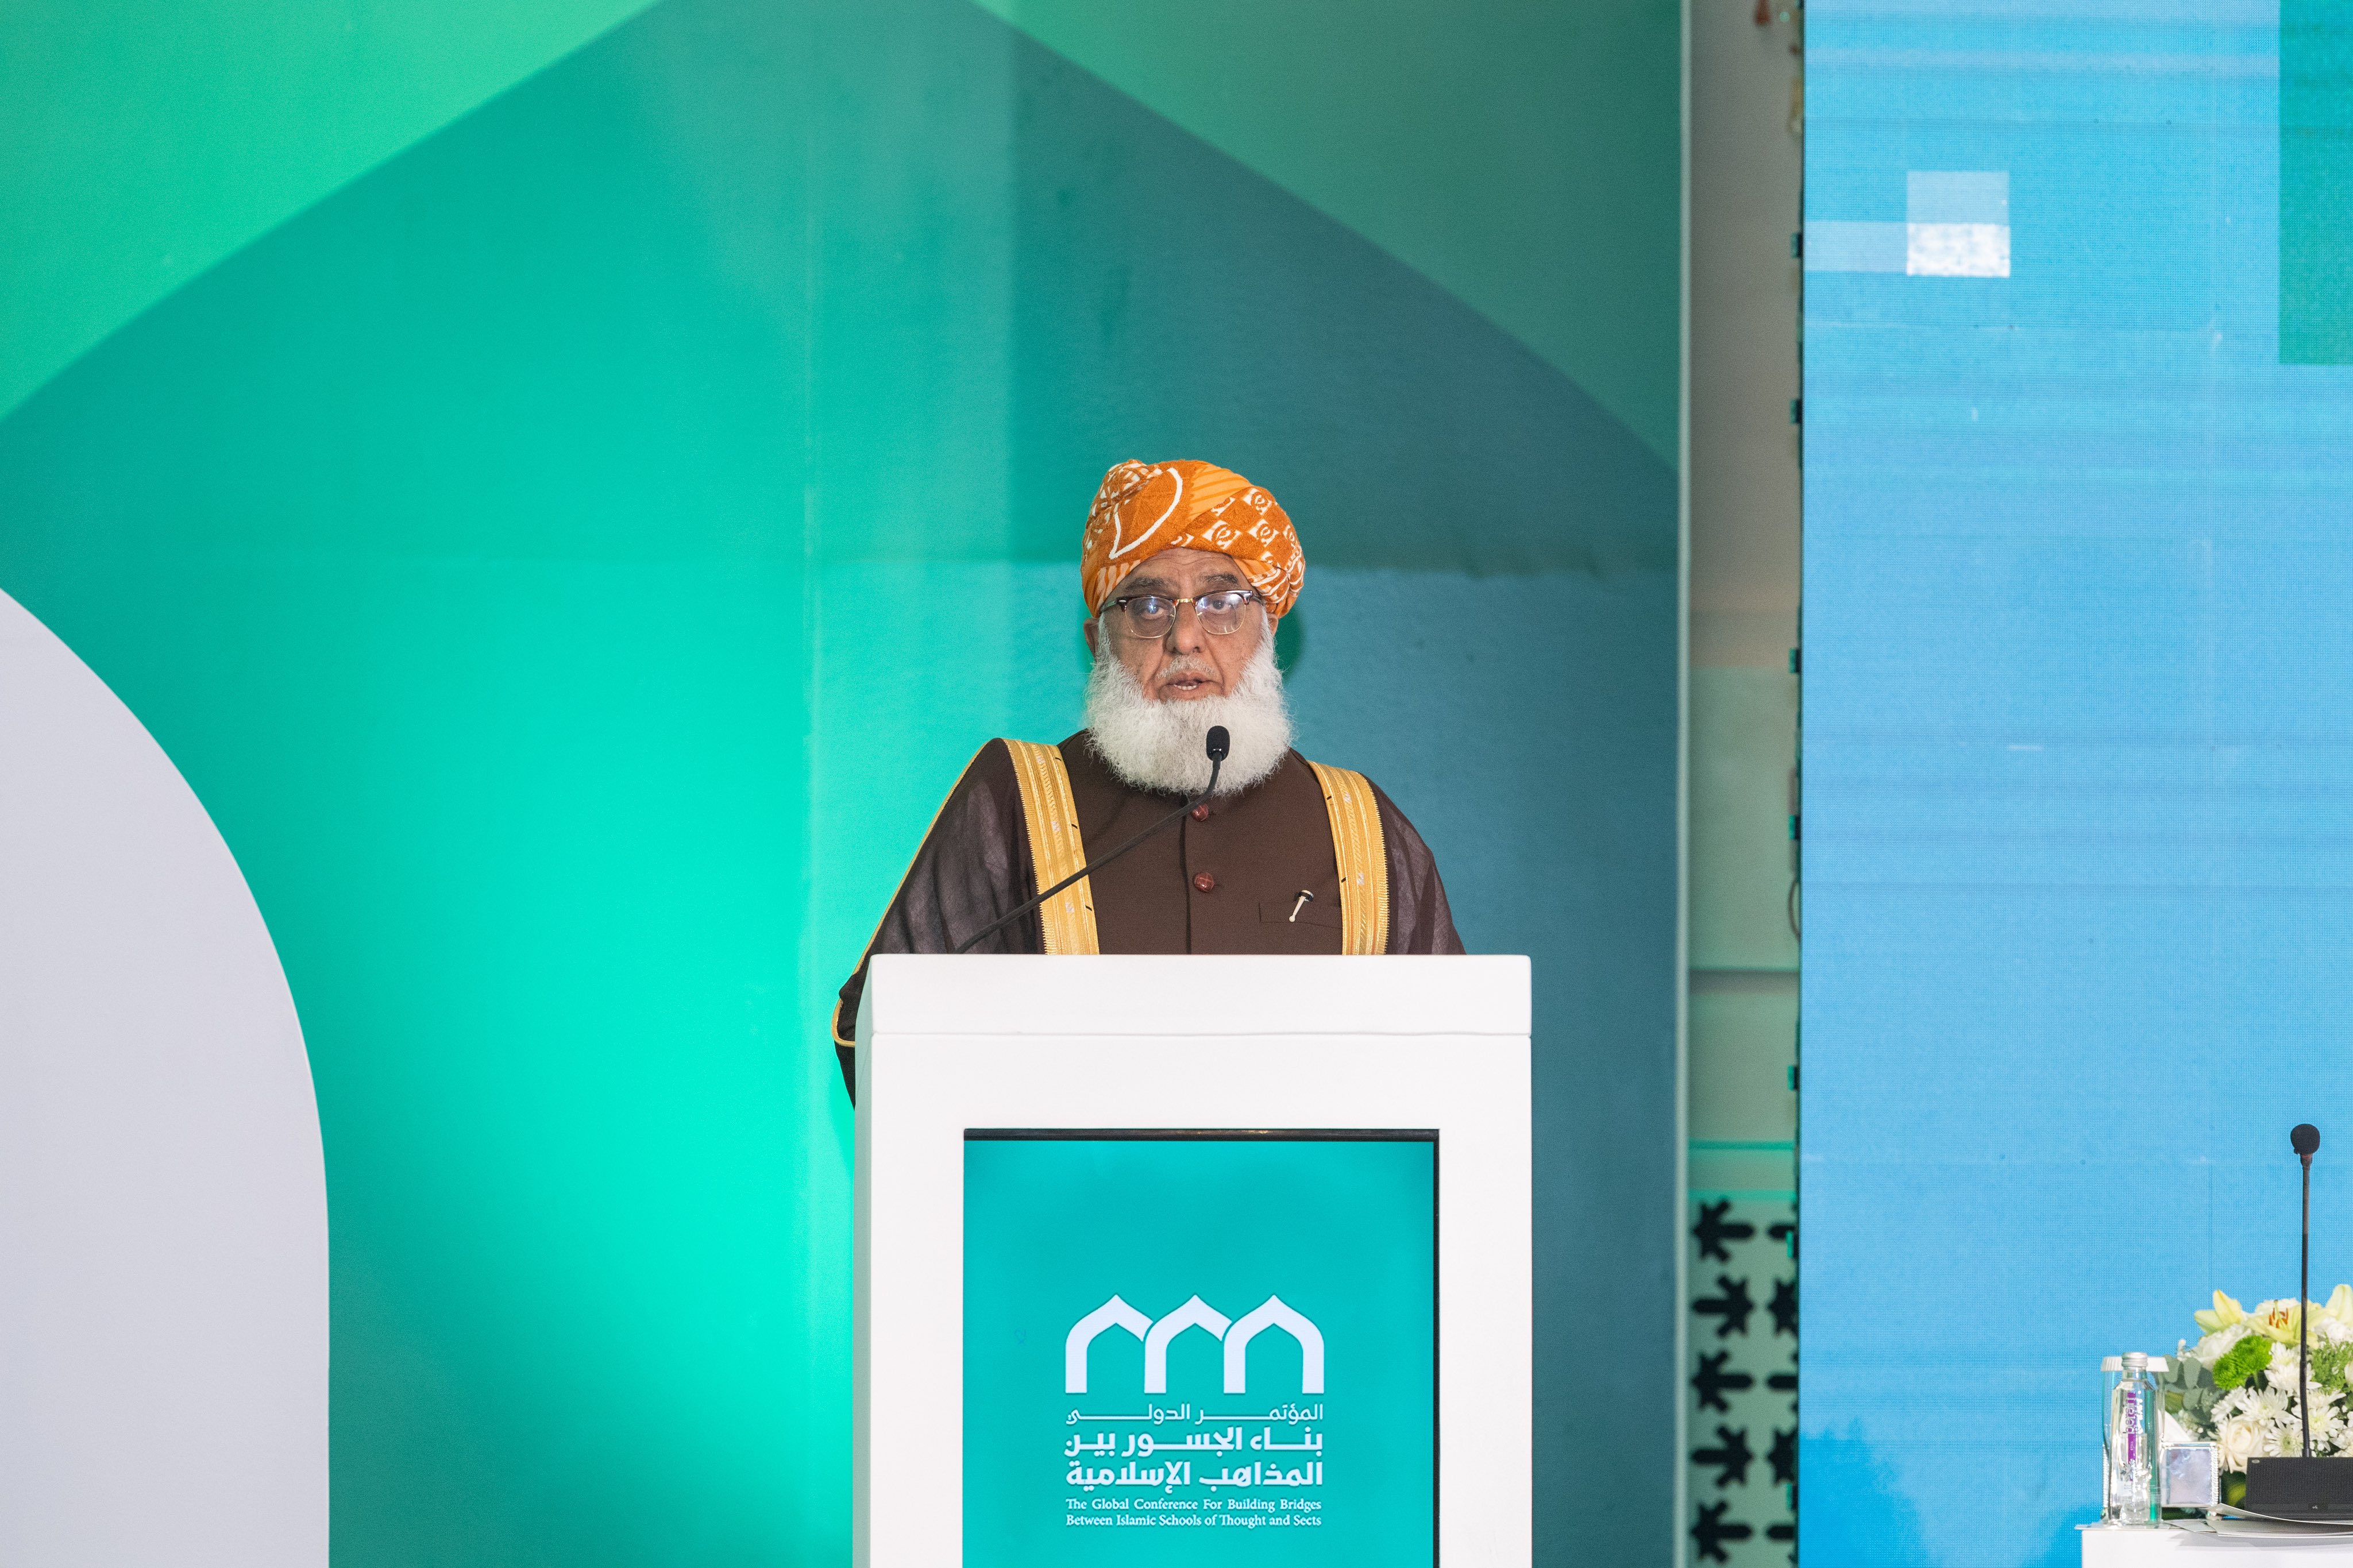 Yang Mulia Amir Asosiasi Ulama Islam di Republik Islam Pakistan, Syeikh Fazl-ur-Rahman bin Mufti Mahmoud, dalam pidatonya pada sesi pembukaan konferensi: “Membangun Jembatan Antar Mazhab Islam”